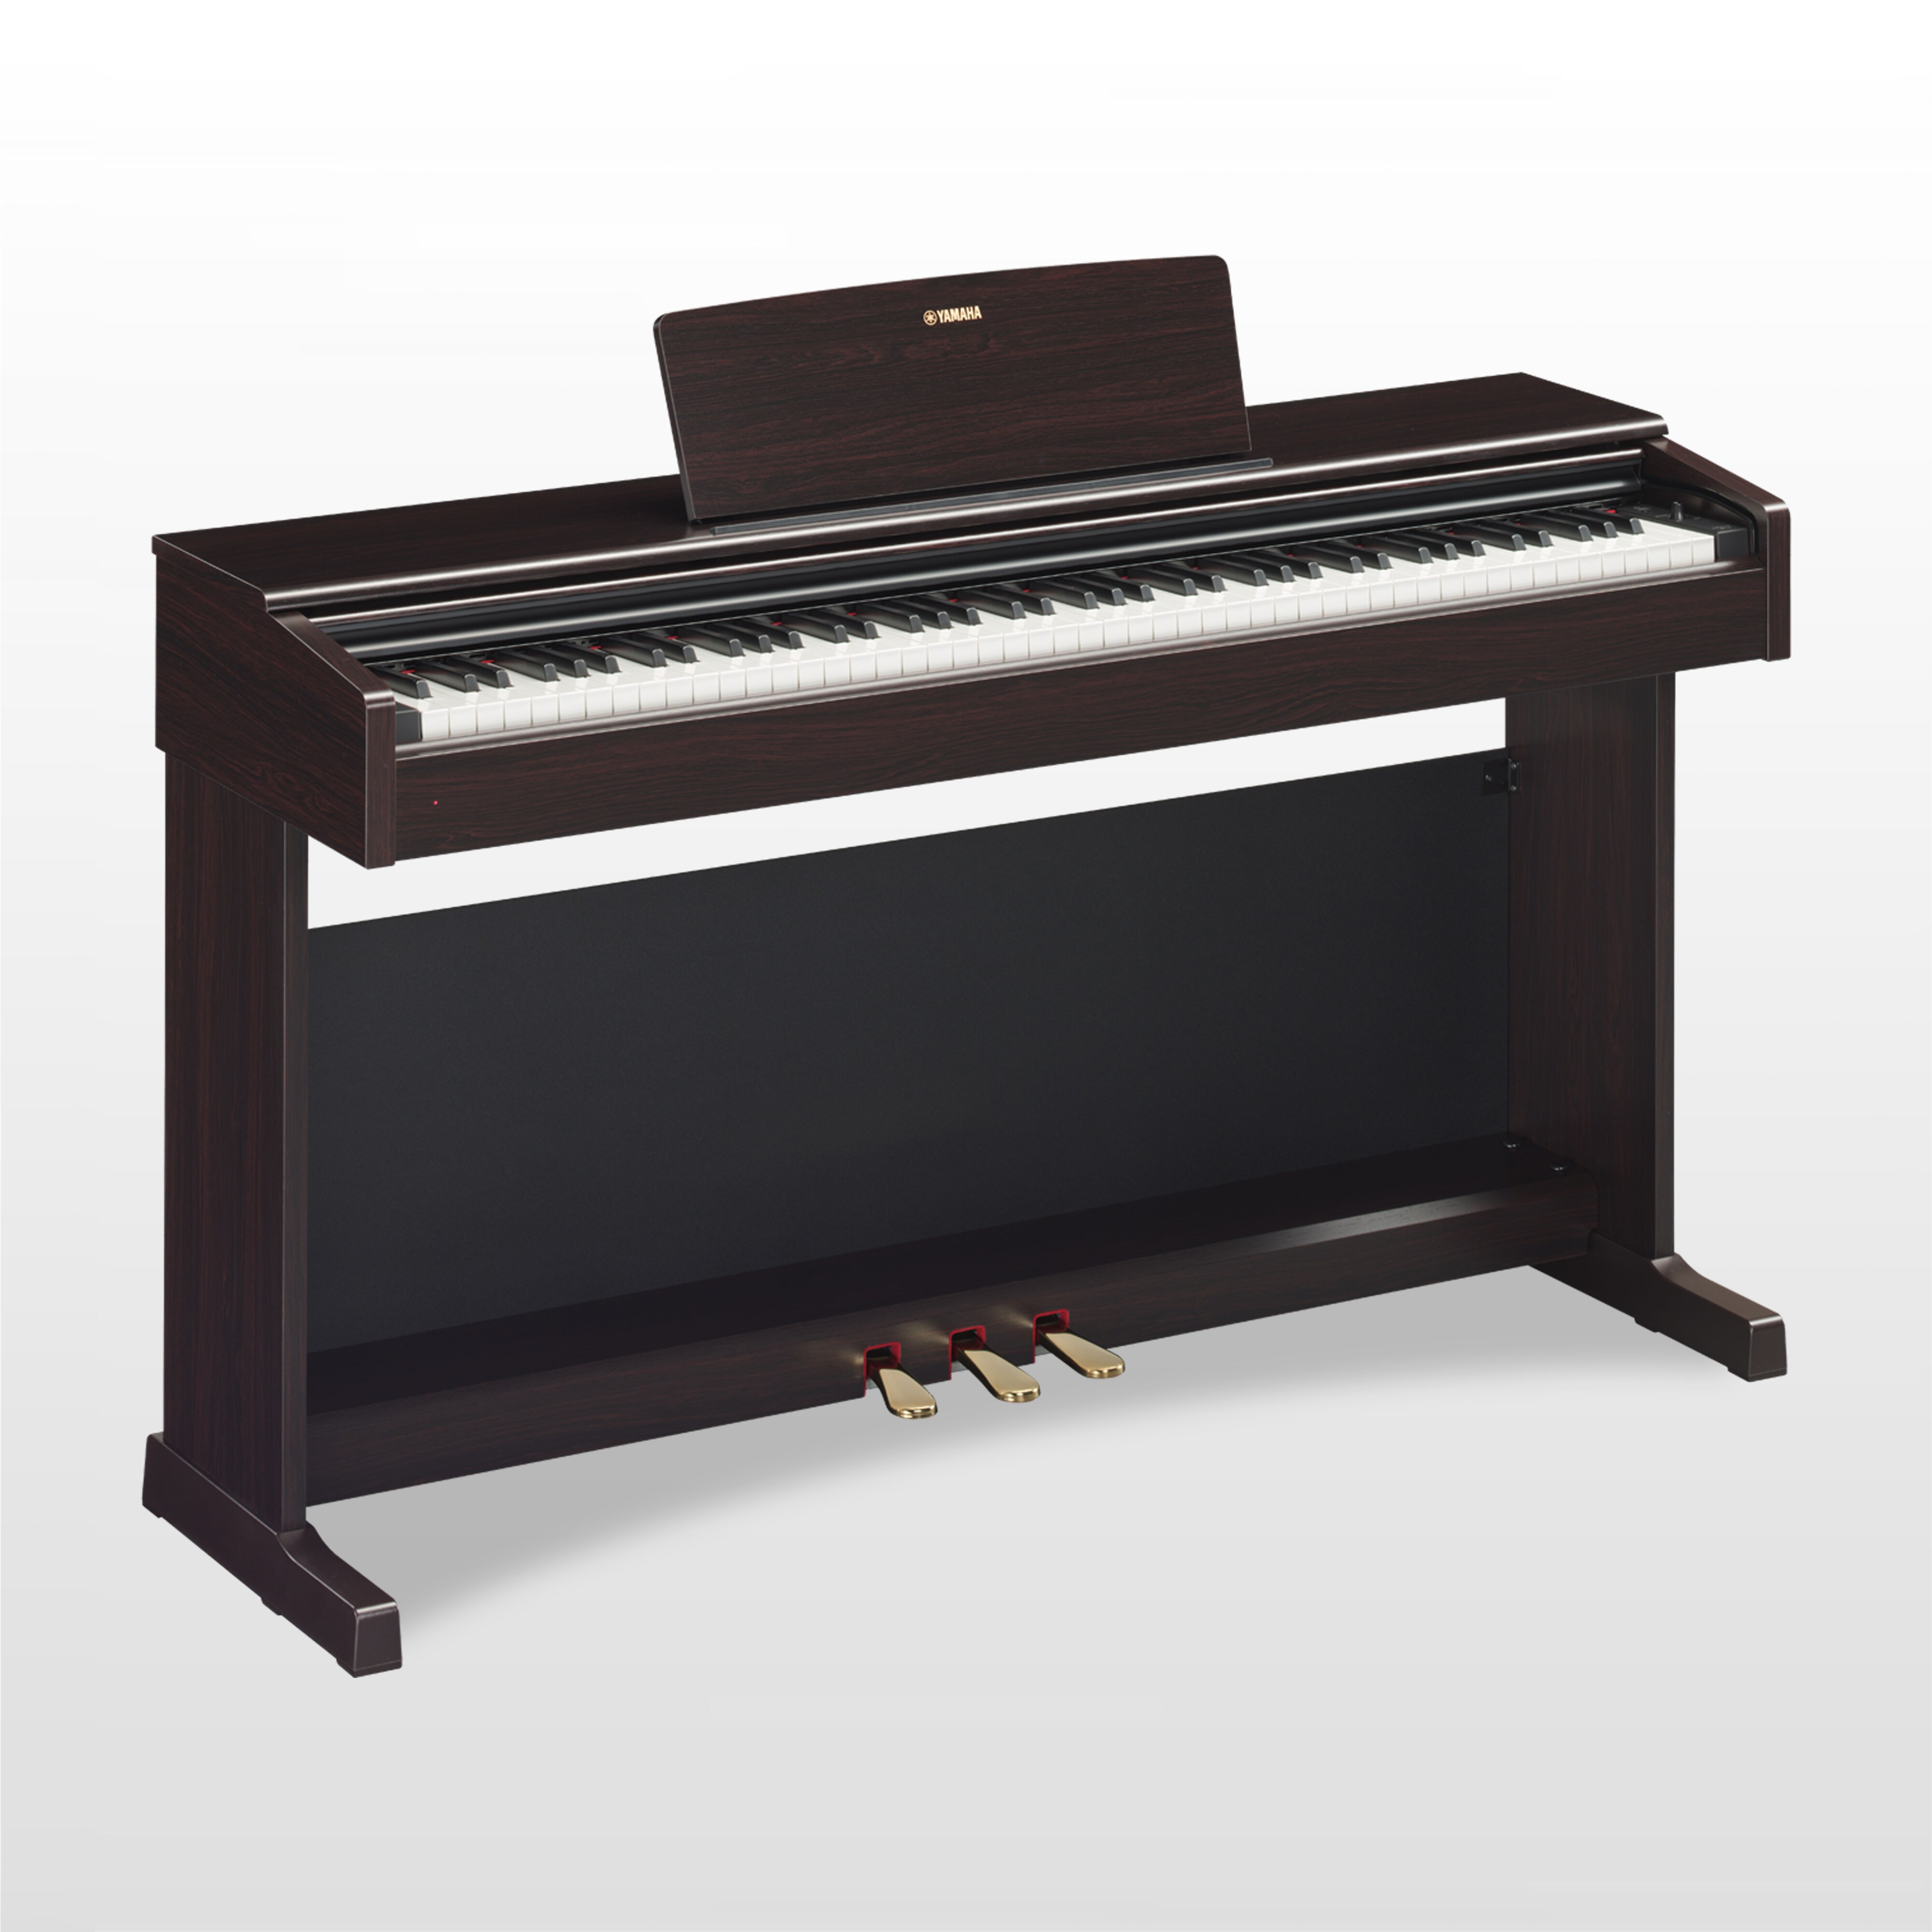 YDP-144 - Übersicht - ARIUS - Pianos - Musikinstrumente ...